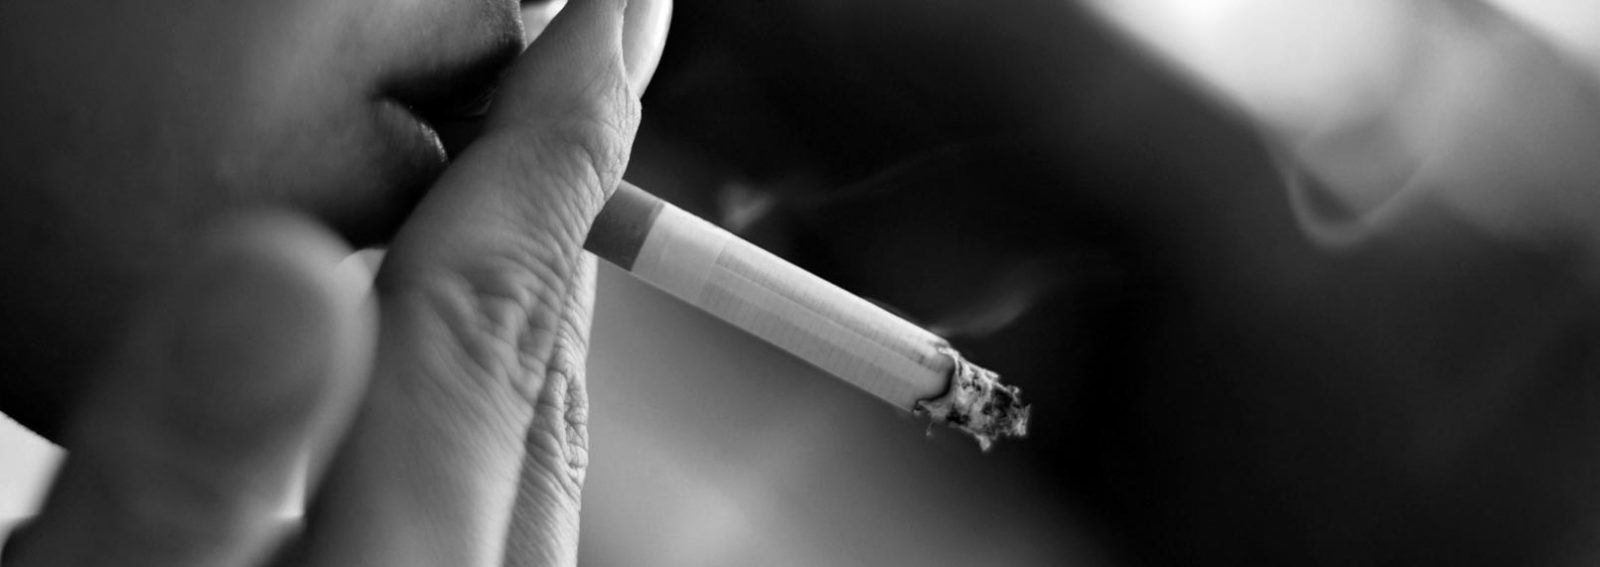 Sigara Bağımlılığı Tedavisi